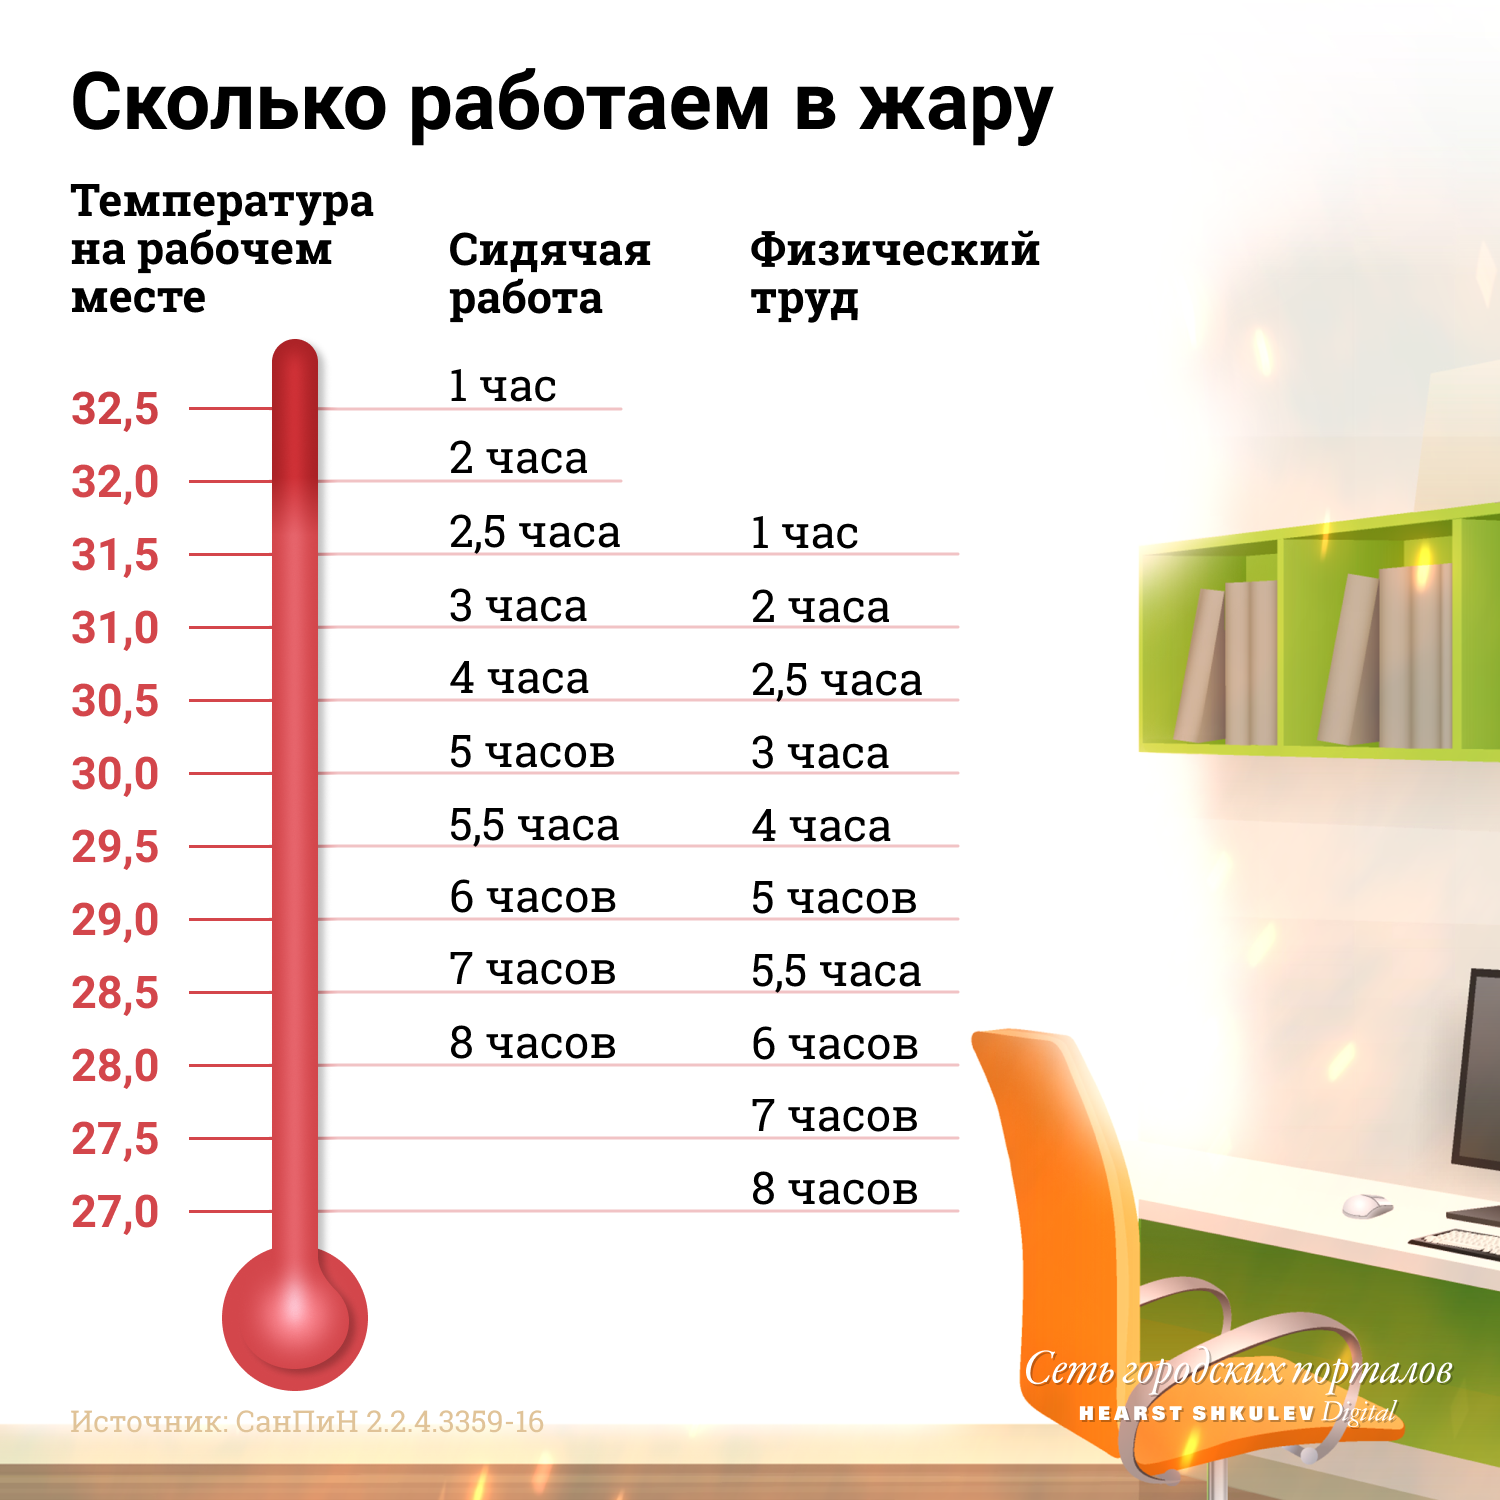 Россиянам всё реже делают послабления на работе из-за жары: что говорит закон